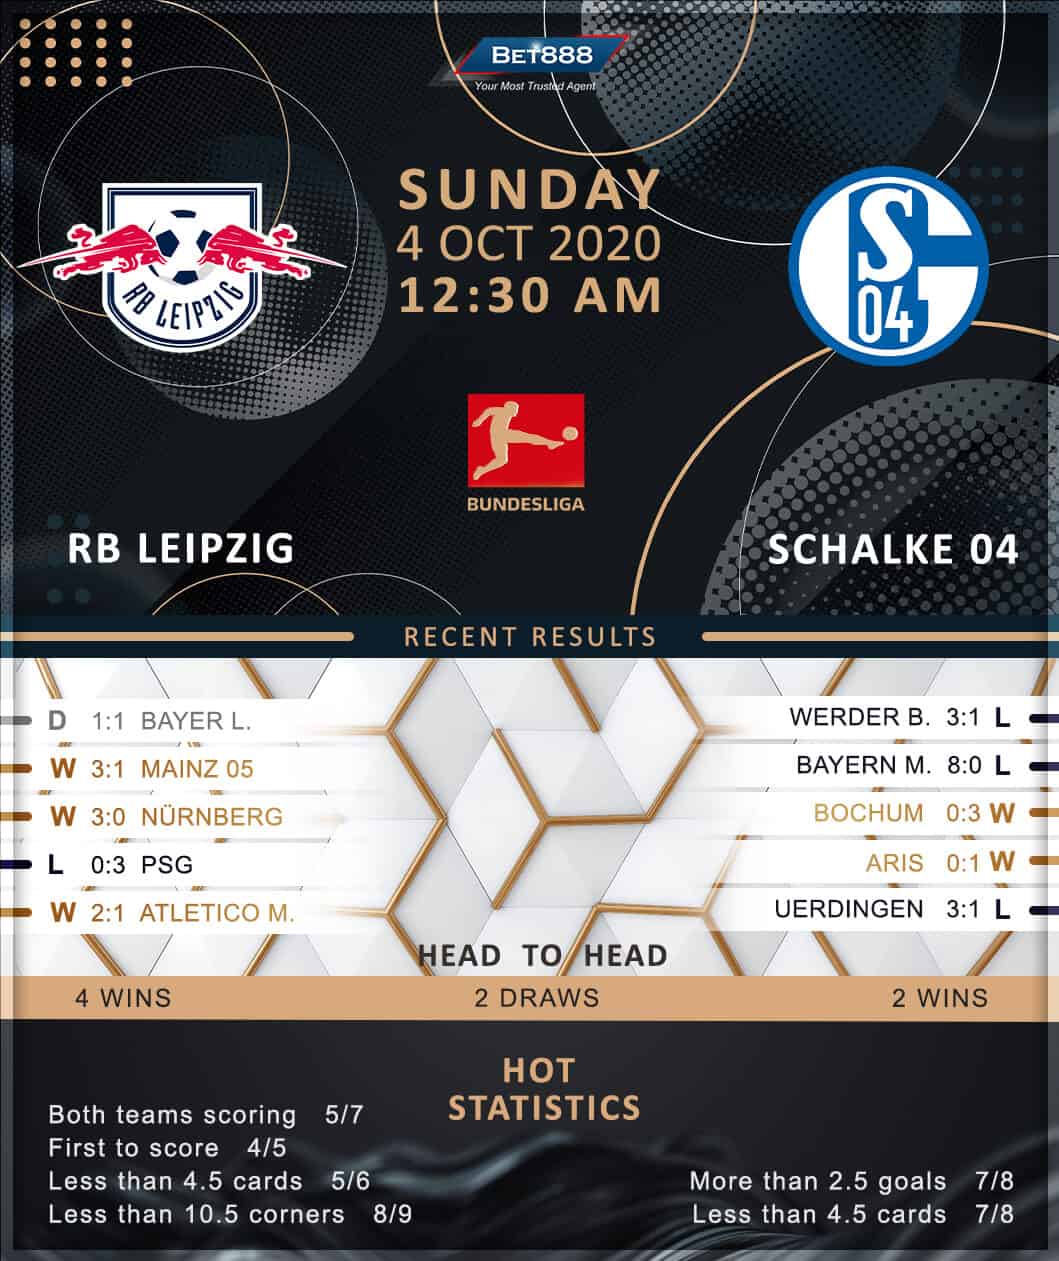 RB Leipzig vs Schalke 04 04/10/20